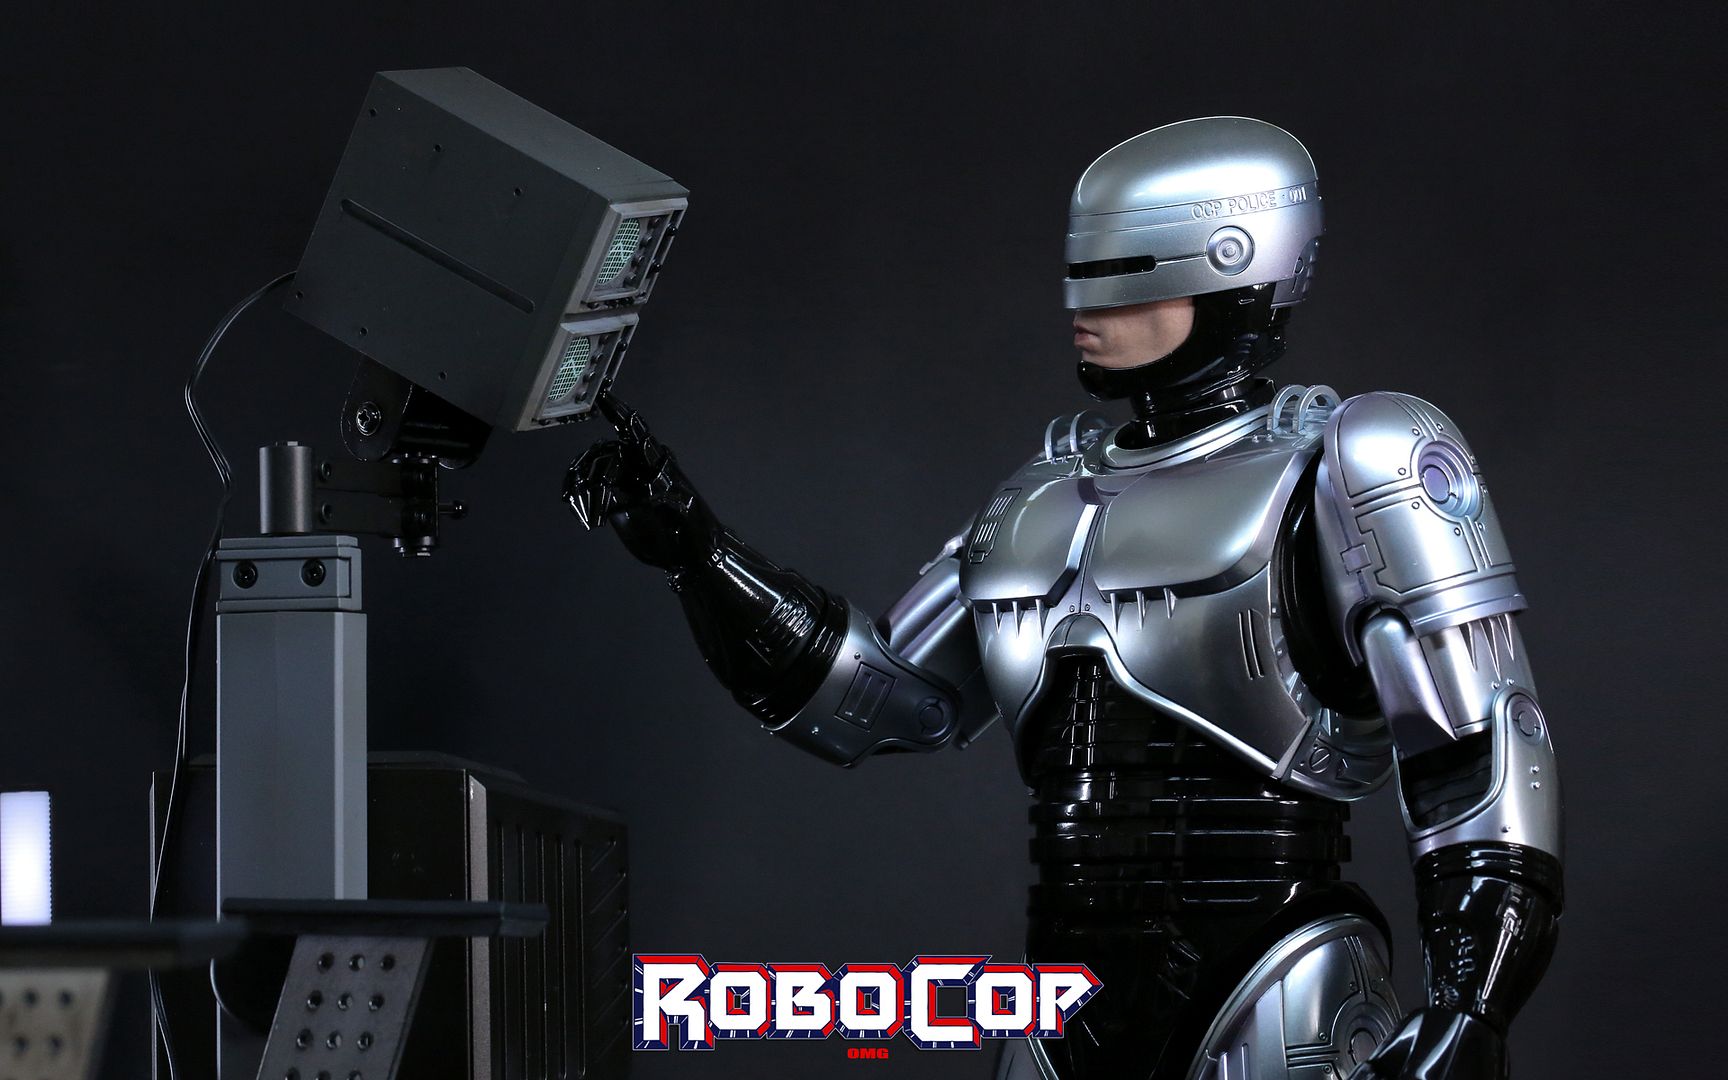 RobocopHD307_zpsd302624a.jpg